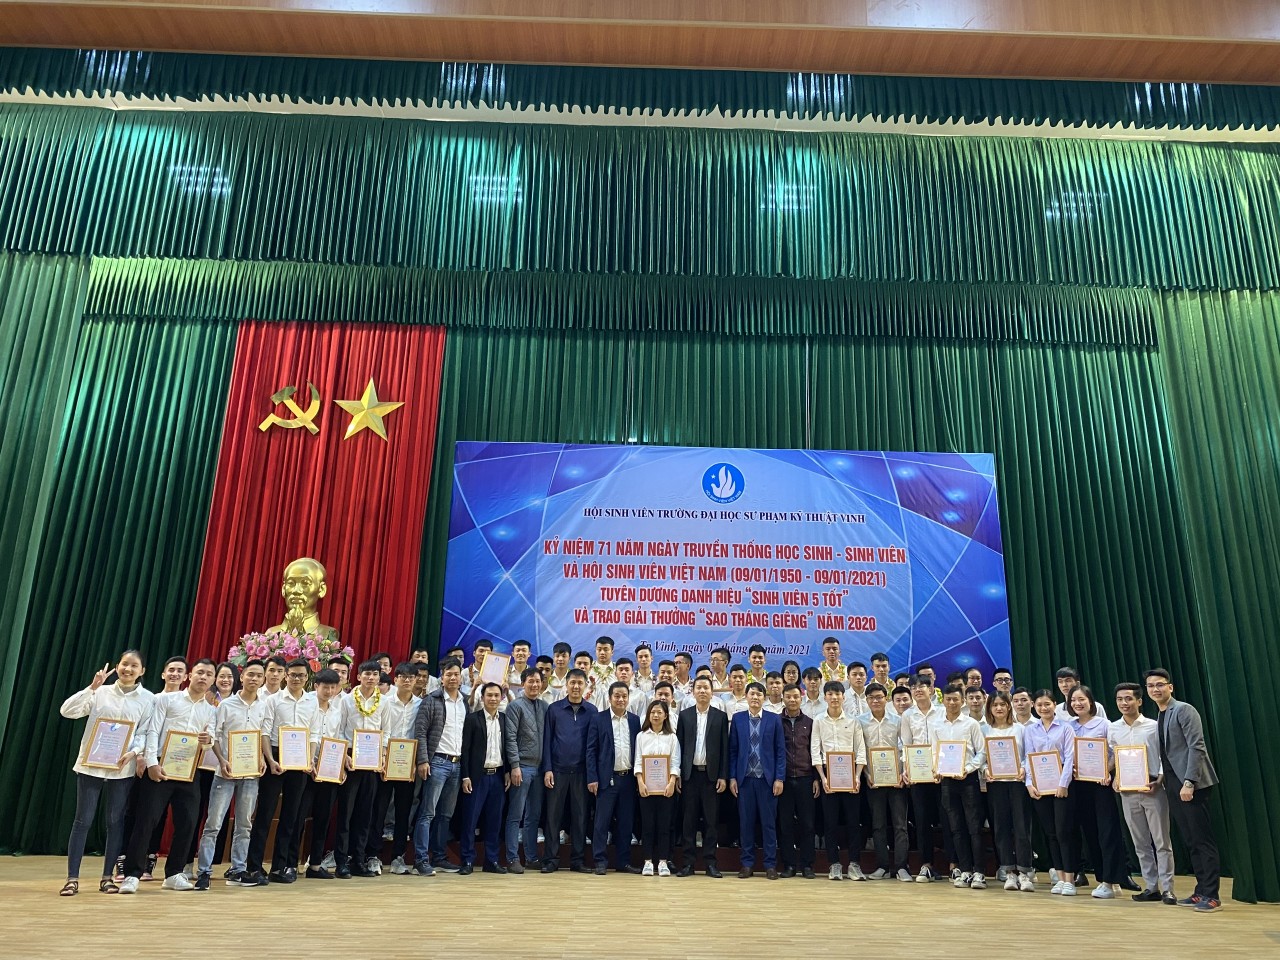 Lễ kỷ niệm 71 năm ngày truyền thống Học sinh - Sinh viên Việt nam và trao giải Sinh viên 5 tốt